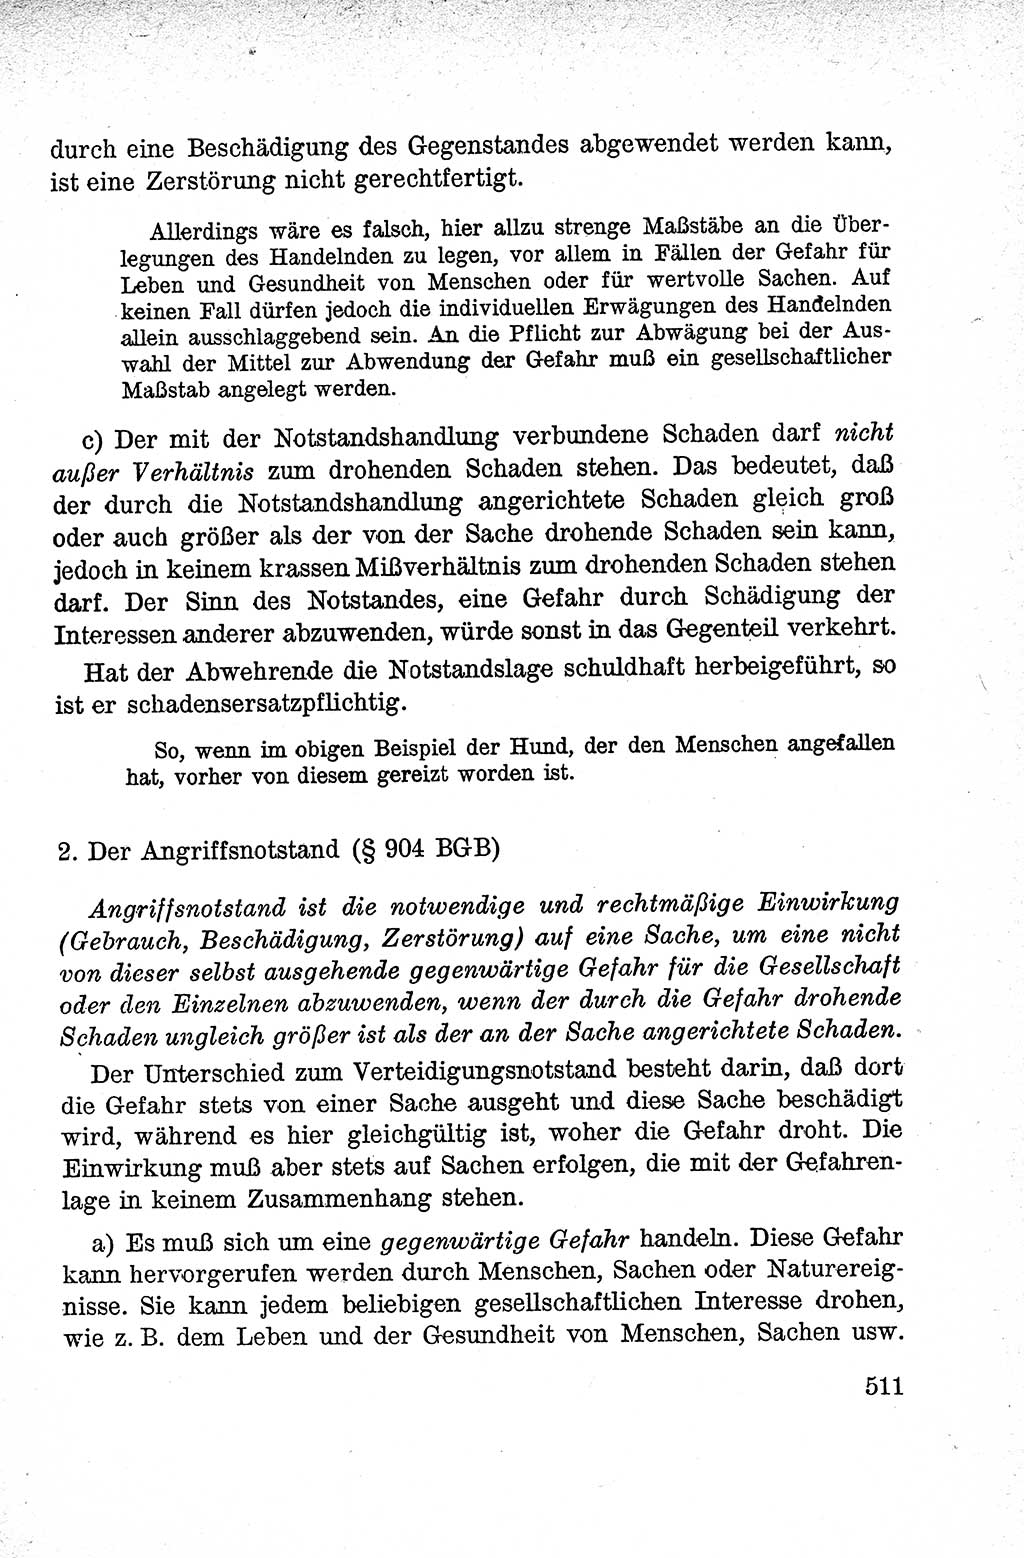 Lehrbuch des Strafrechts der Deutschen Demokratischen Republik (DDR), Allgemeiner Teil 1959, Seite 511 (Lb. Strafr. DDR AT 1959, S. 511)